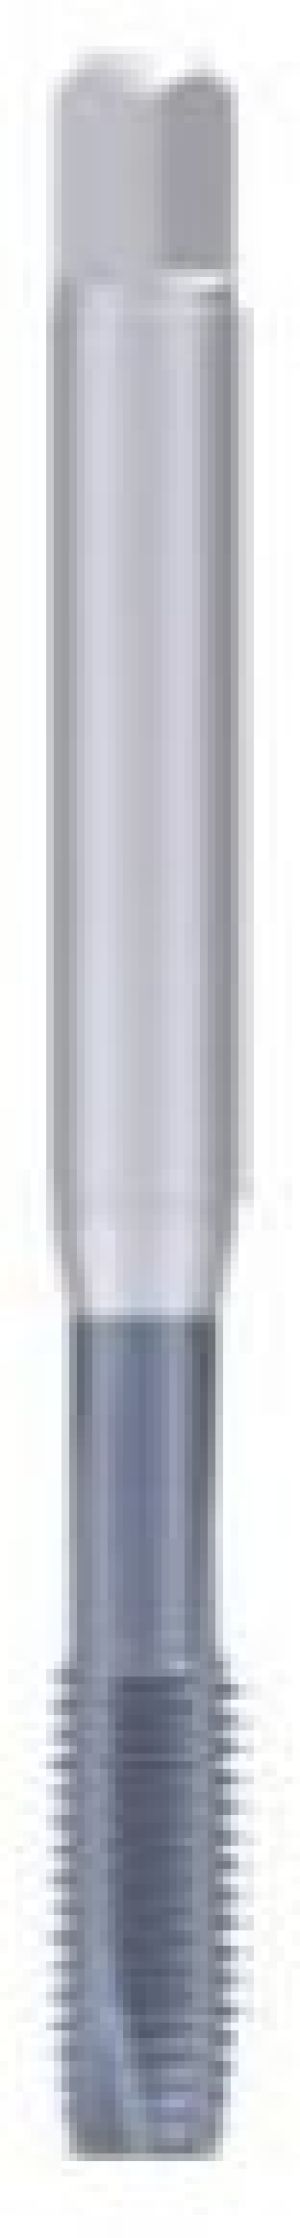 Fanar Gwintownik maszynowy M8 (C4-115001-0080) 1